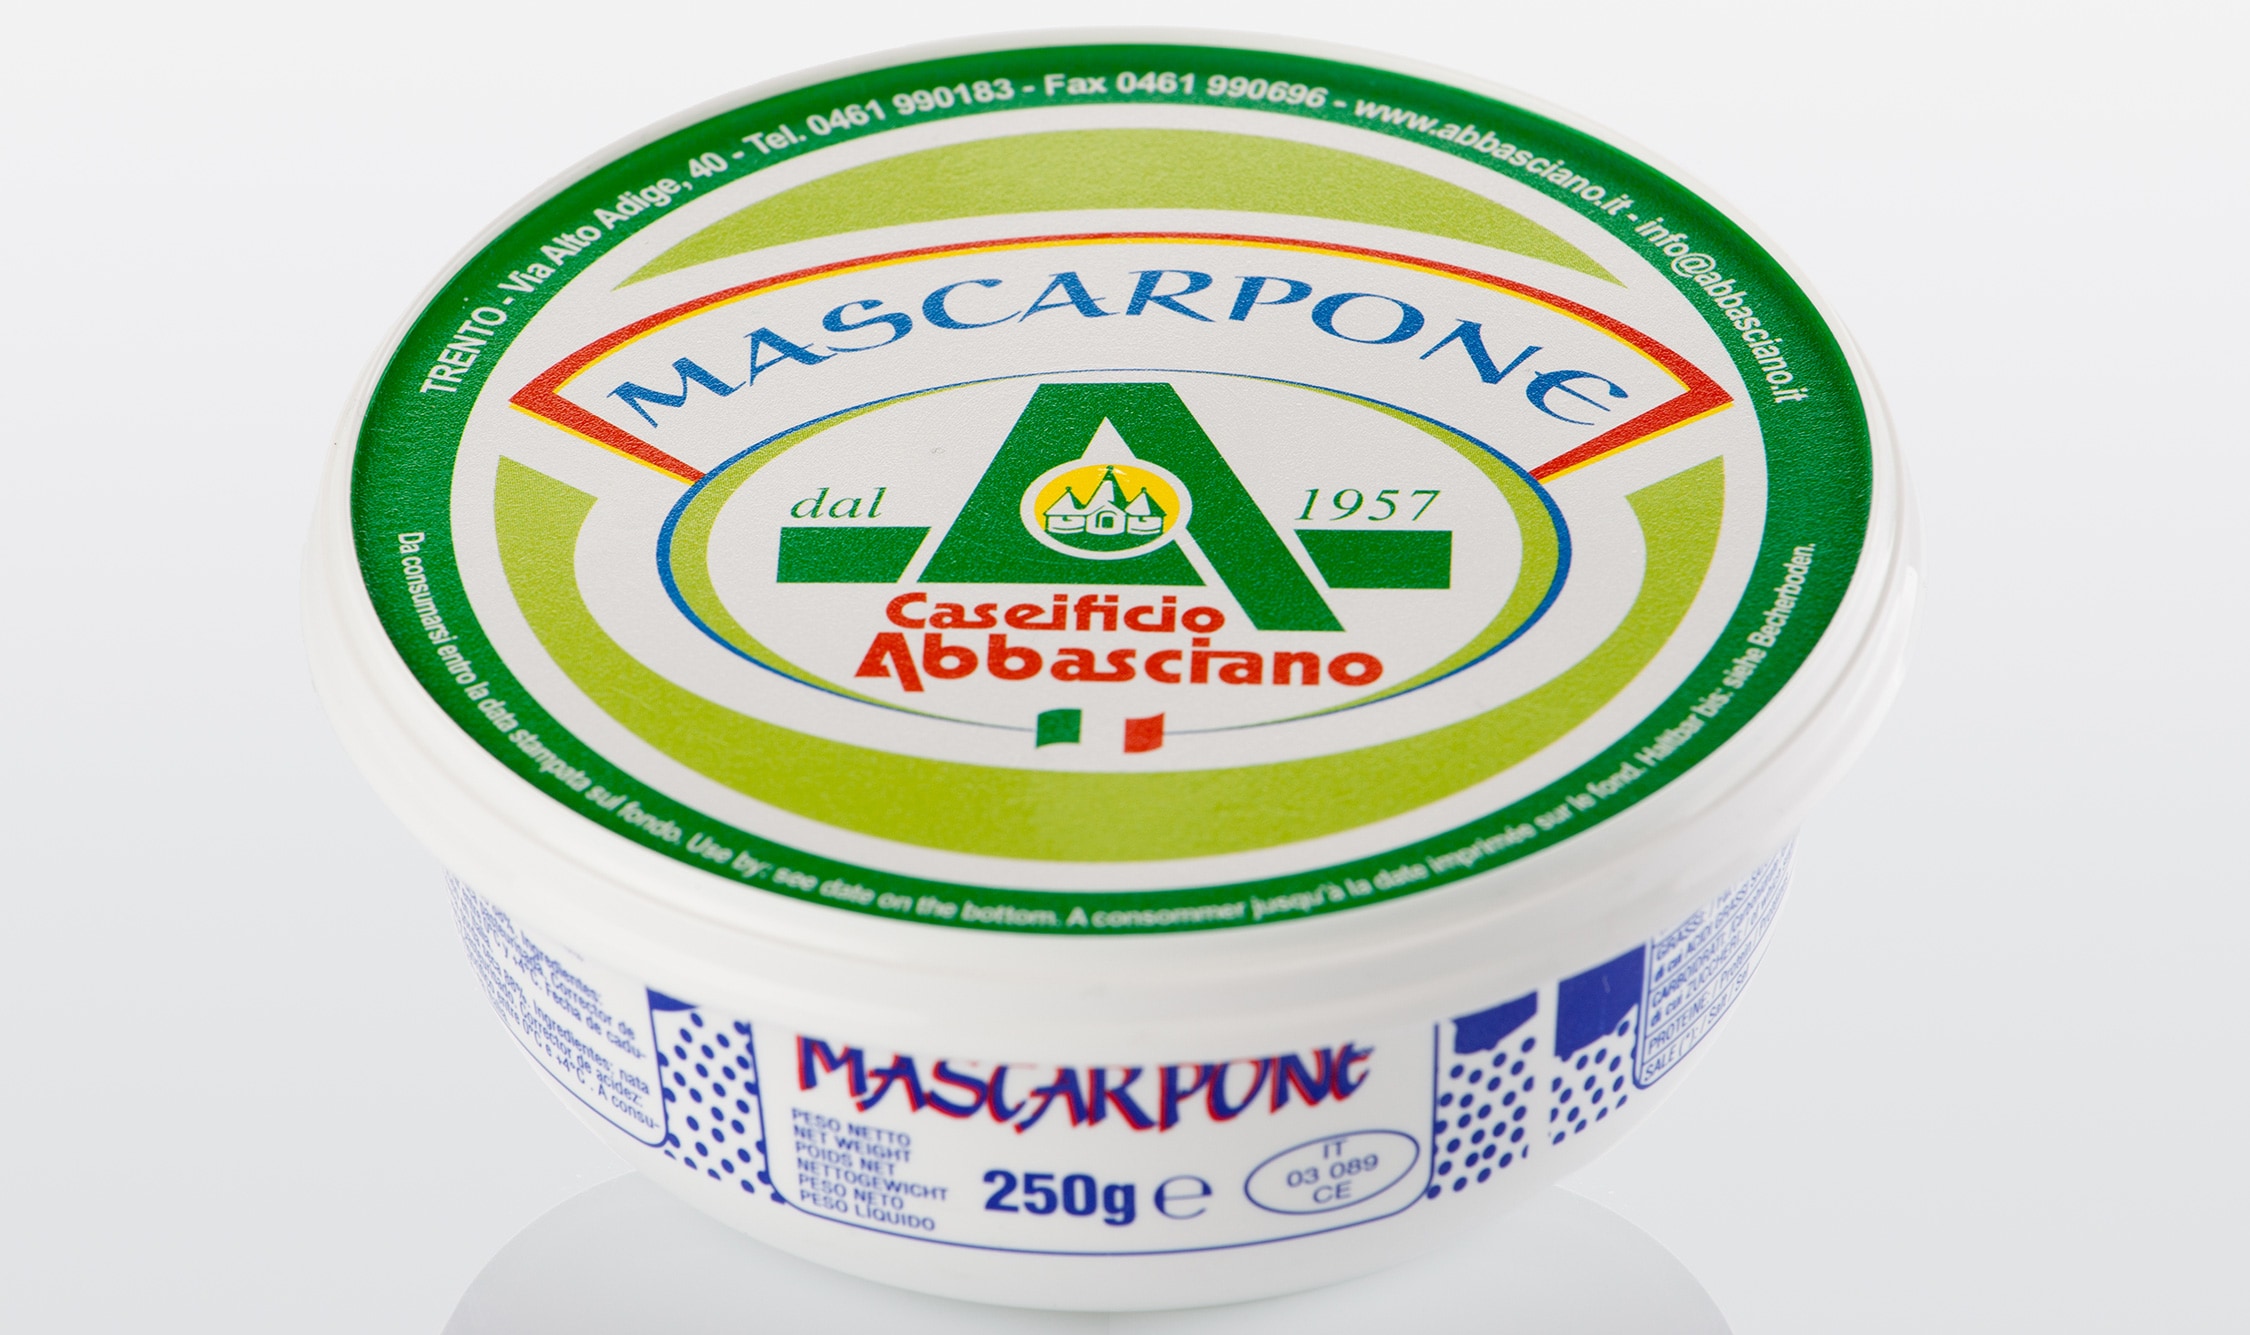 abbasciano-1057-2-mascarpone